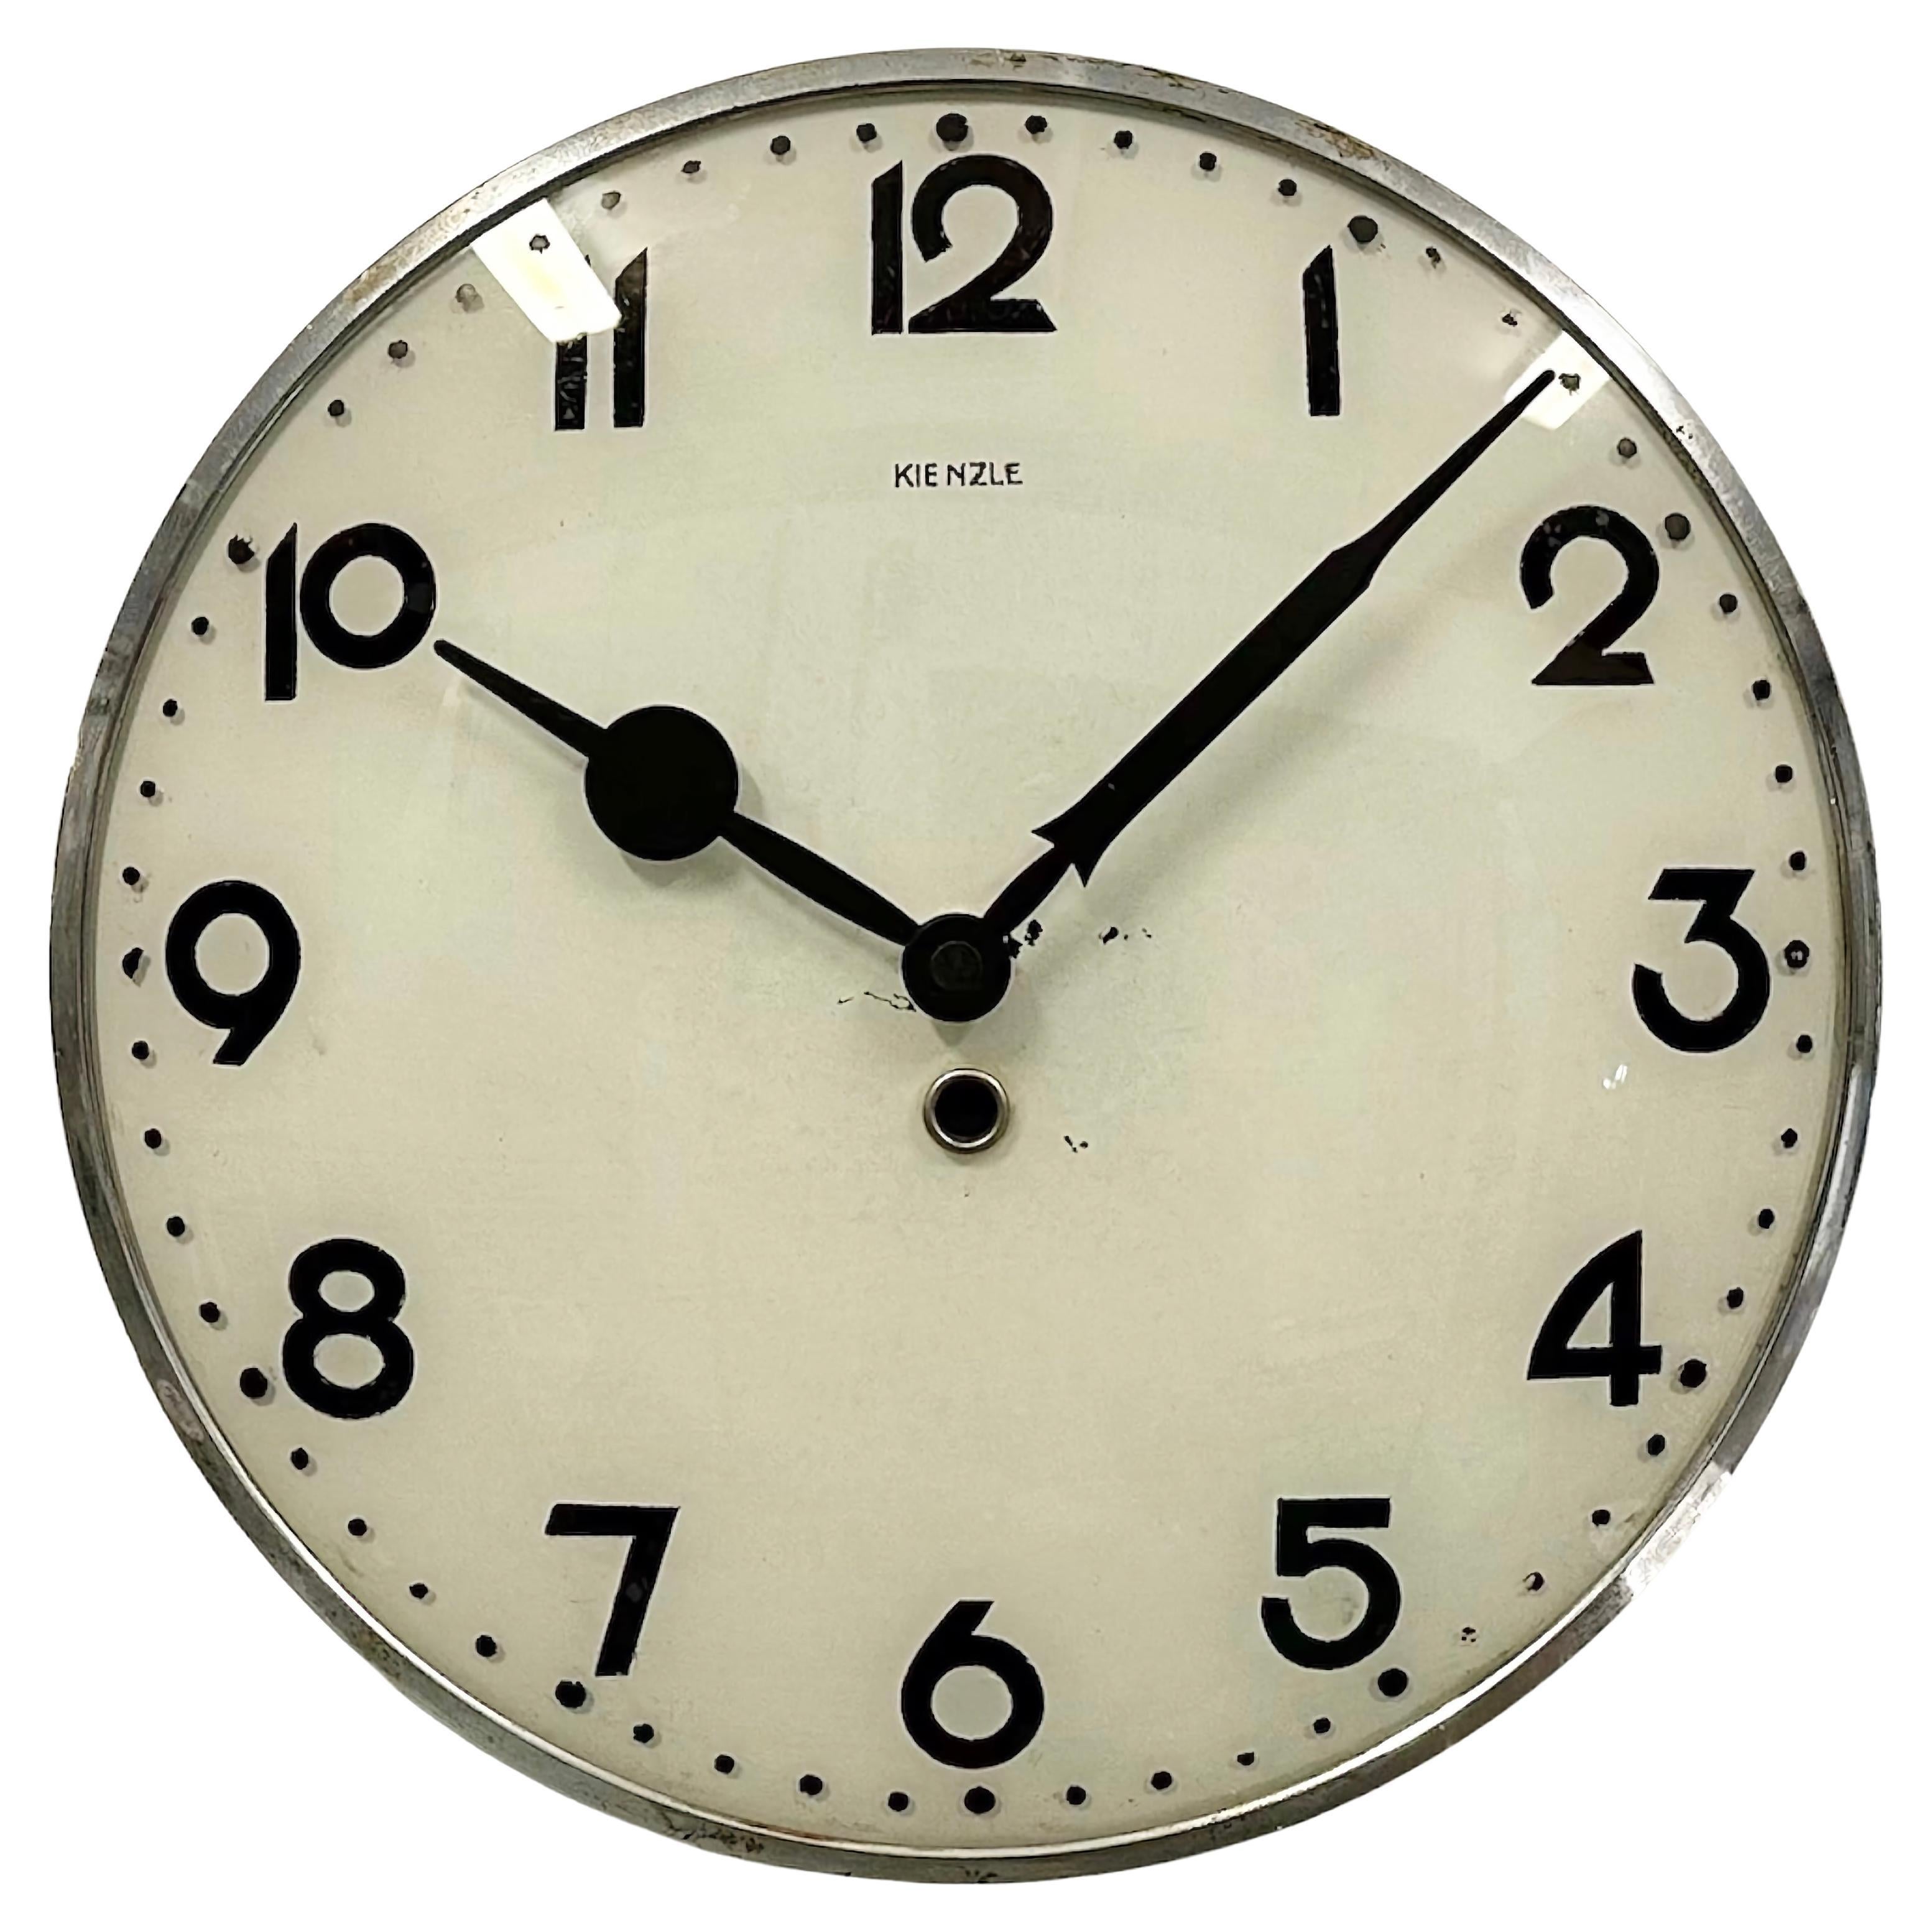 Vintage Wall Clock from Kienzle, 1950s